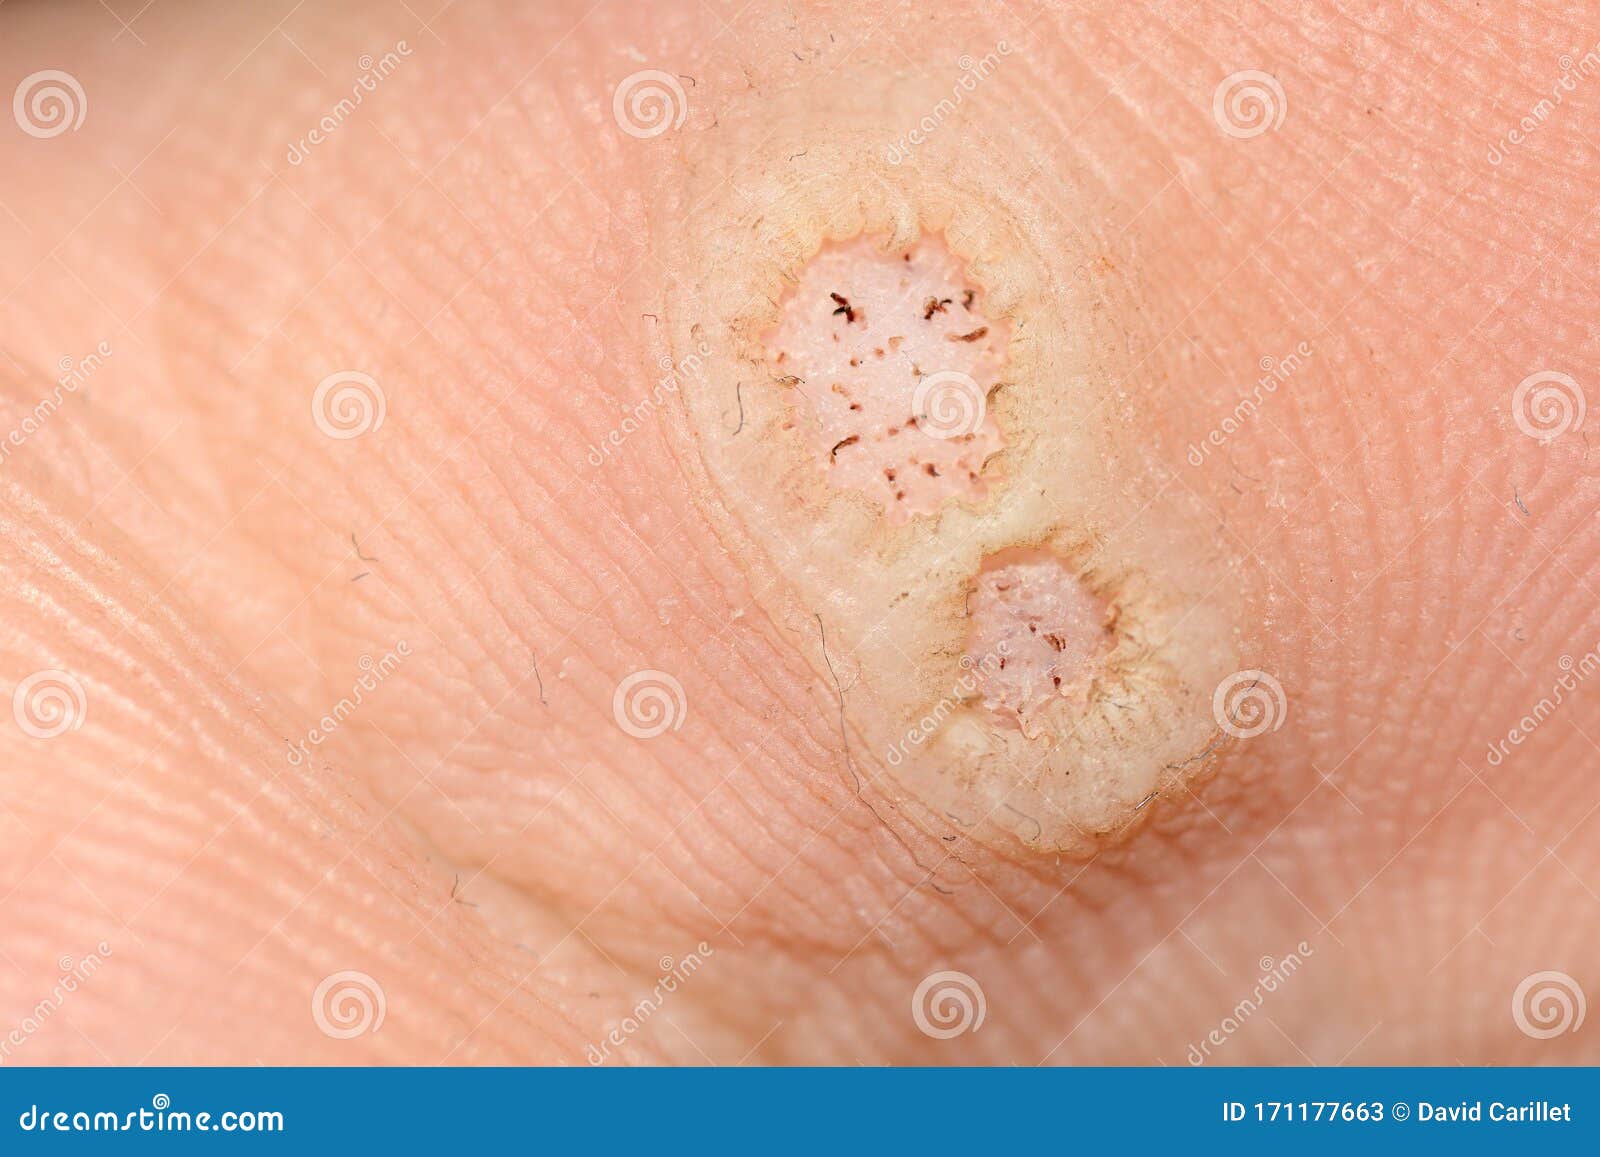 Papilloma genital warts